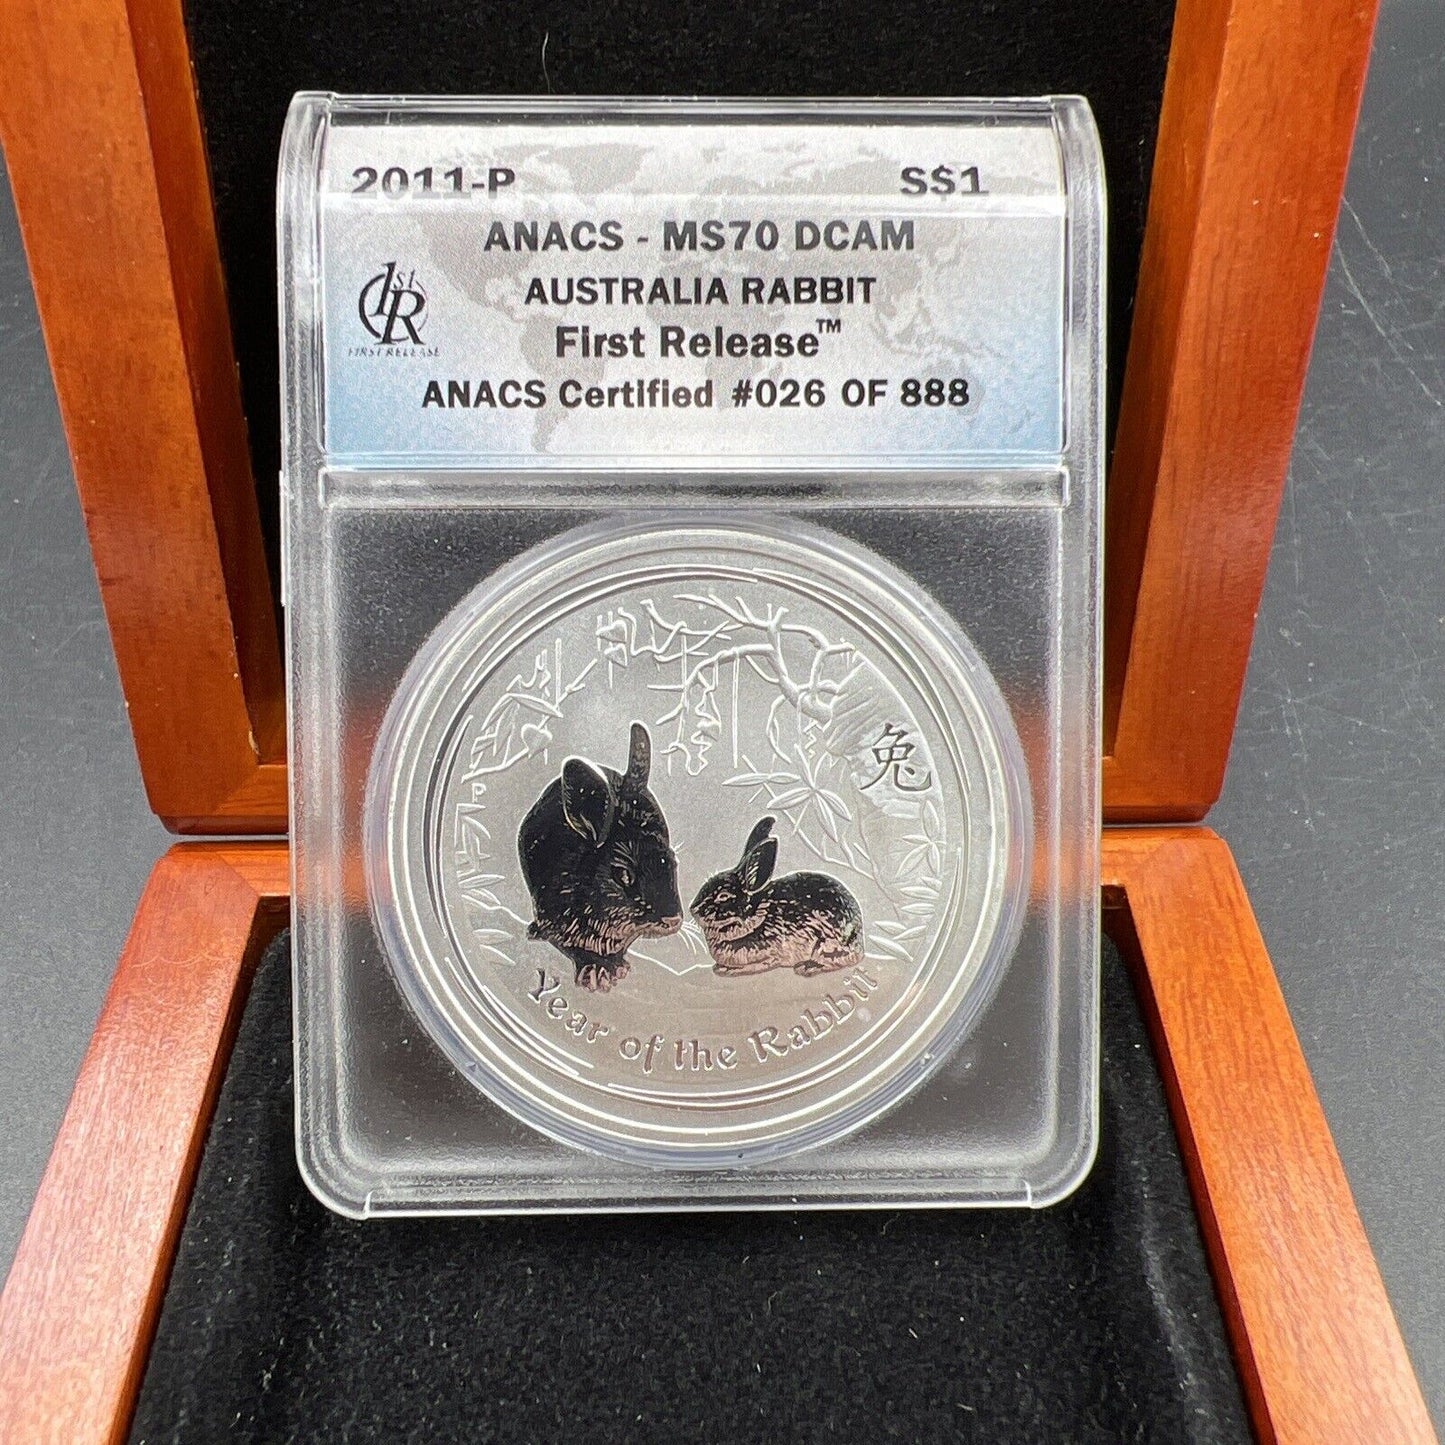 2011 1 oz Silver Australia Rabbit $1 Coin .999 ANACS MS70 DCAM in Display Box #6